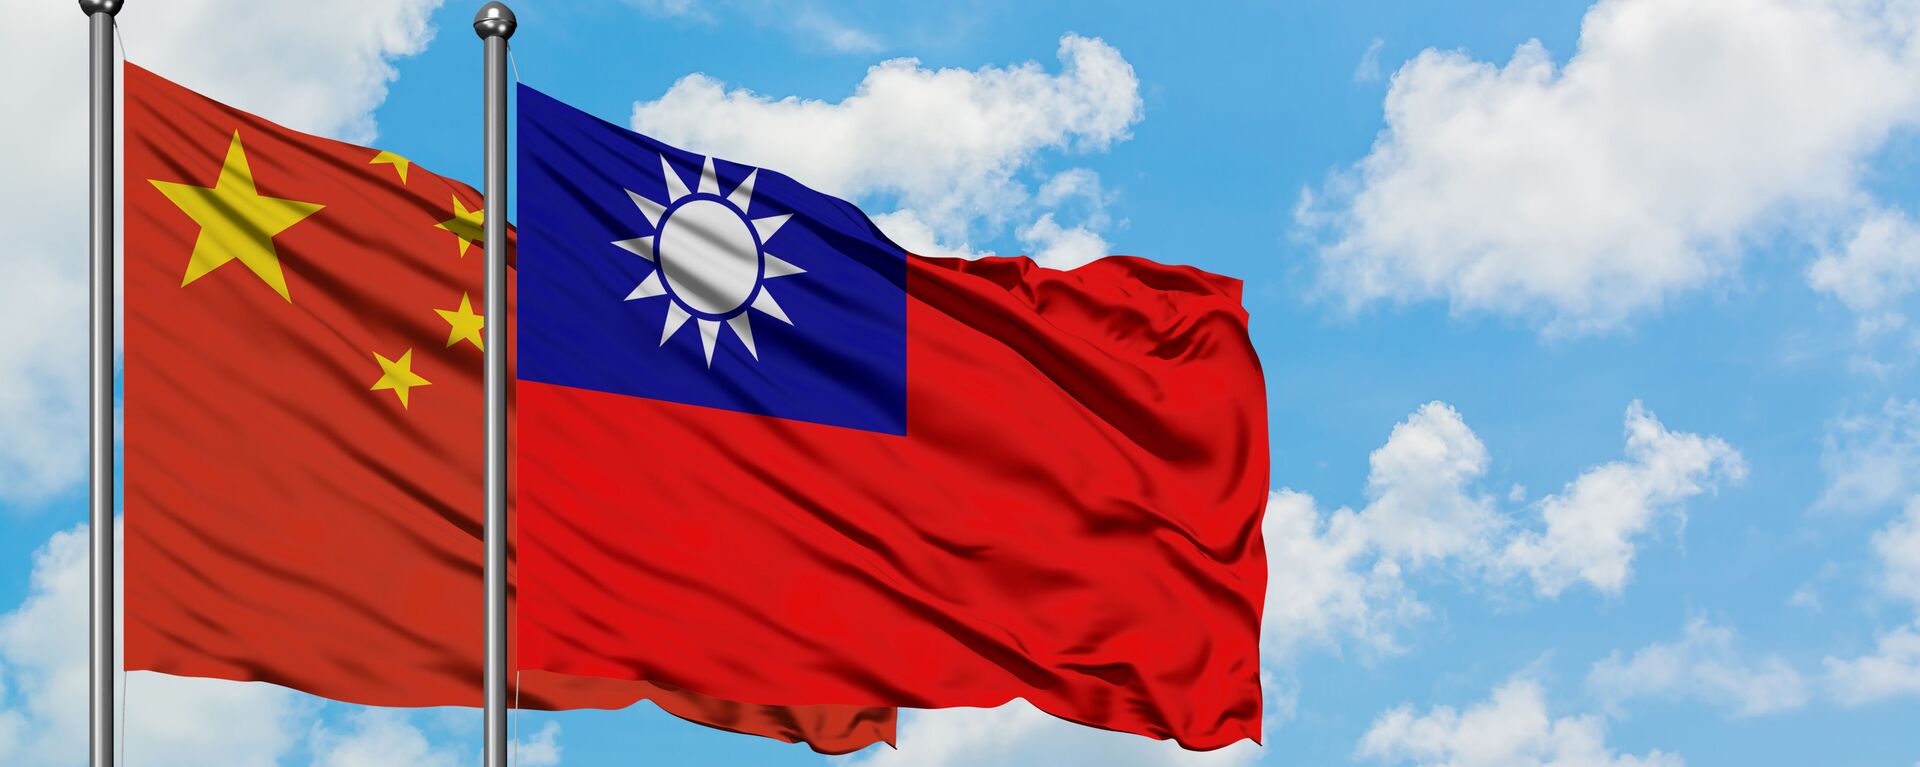 台湾の政権が中国に移った場合「カタストロフィー的結果」に　台湾総統が警告 - Sputnik 日本, 1920, 06.10.2021